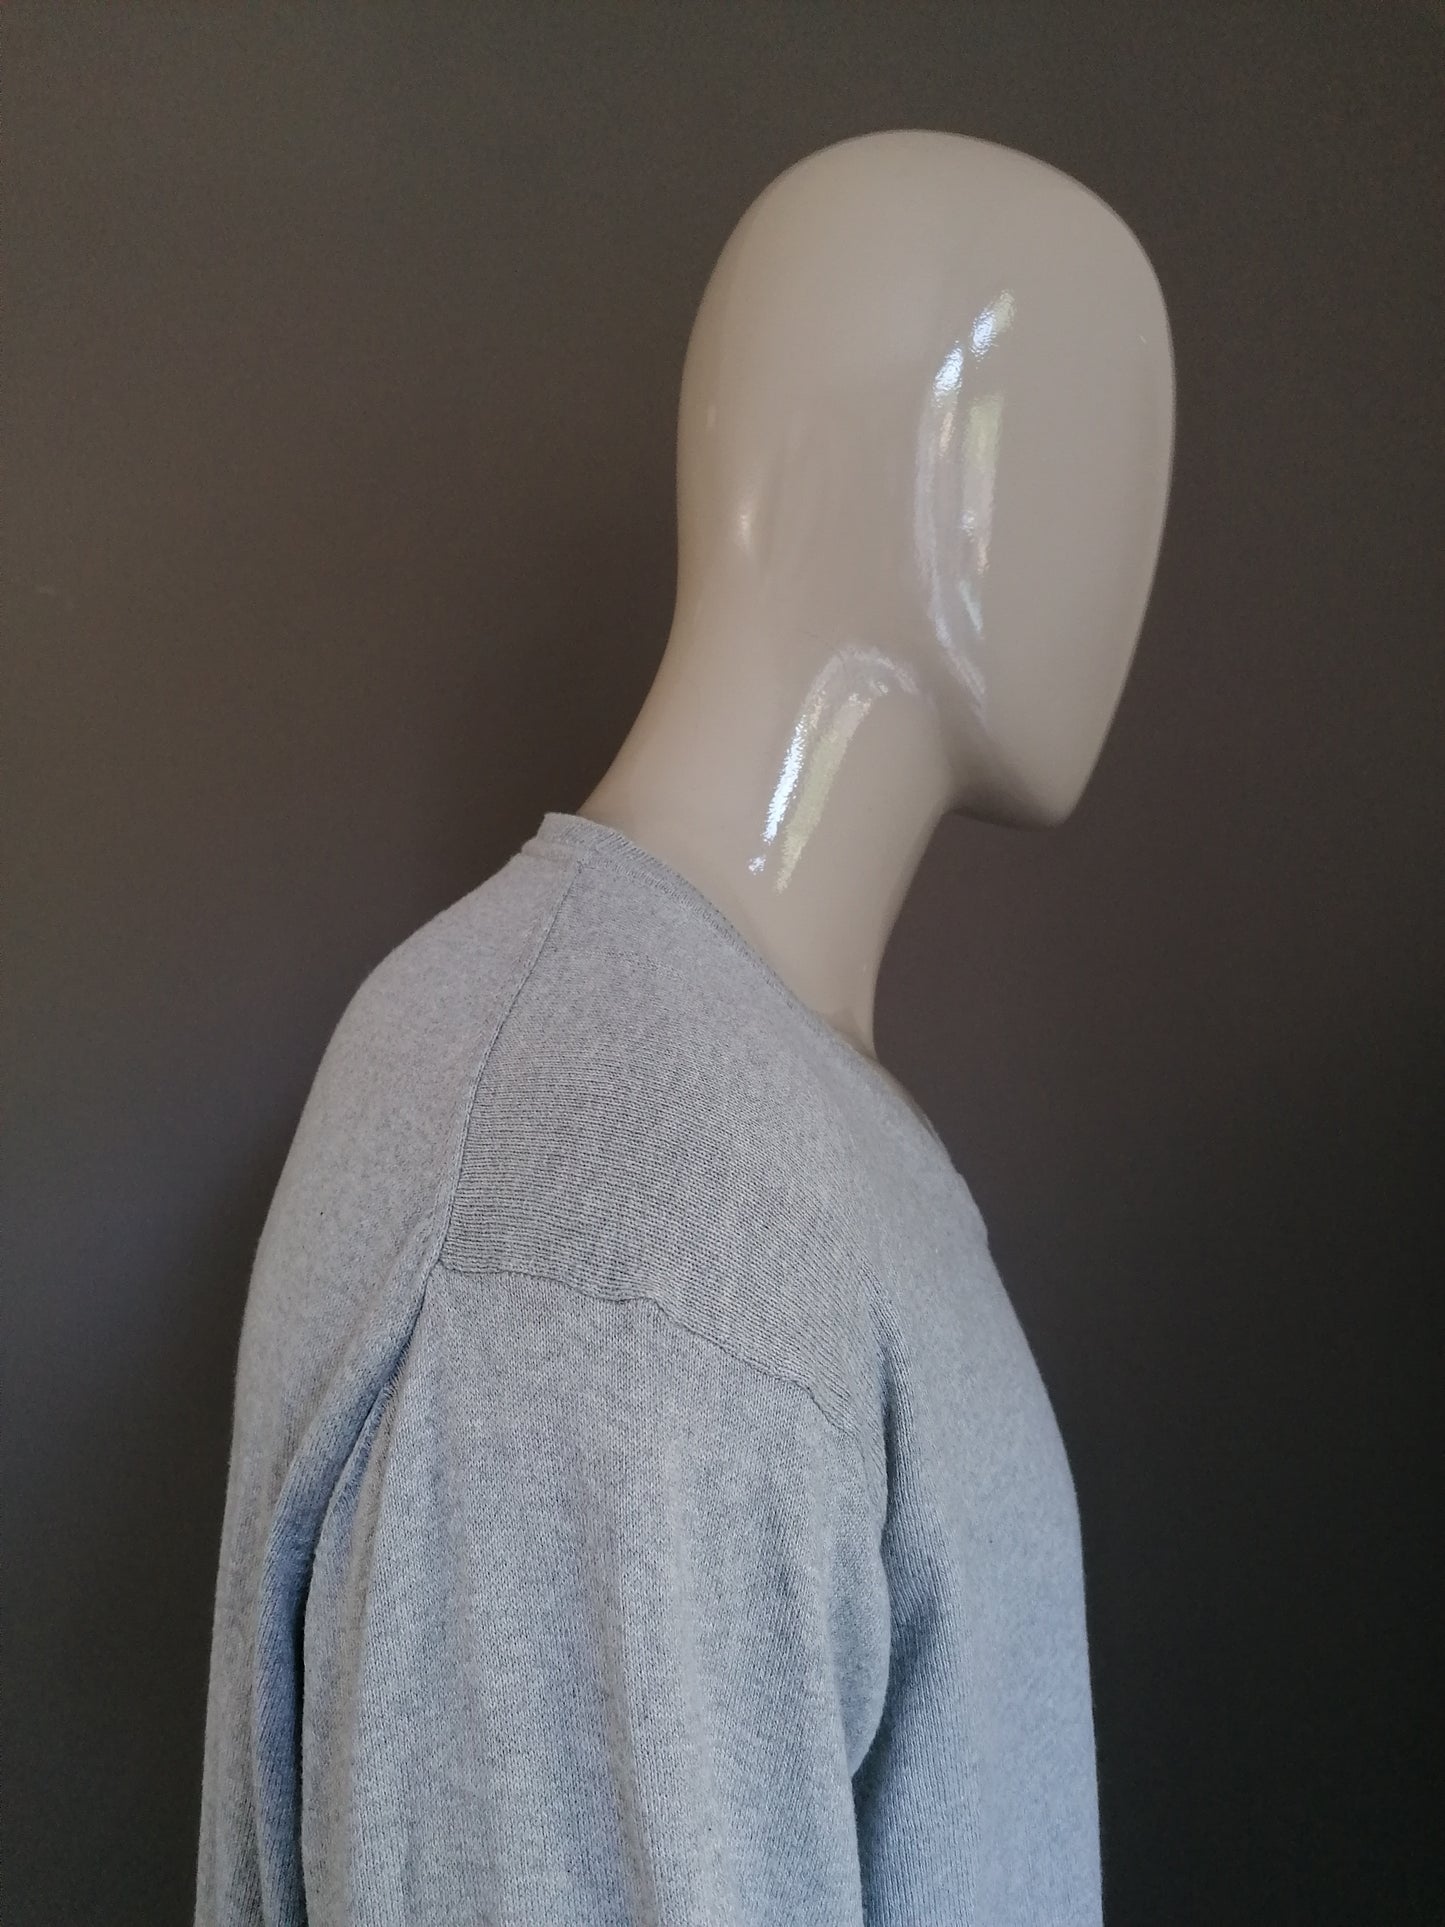 Suéter de inesis con cuello en v. Gris mezclado. Tamaño XXXL / 3XL